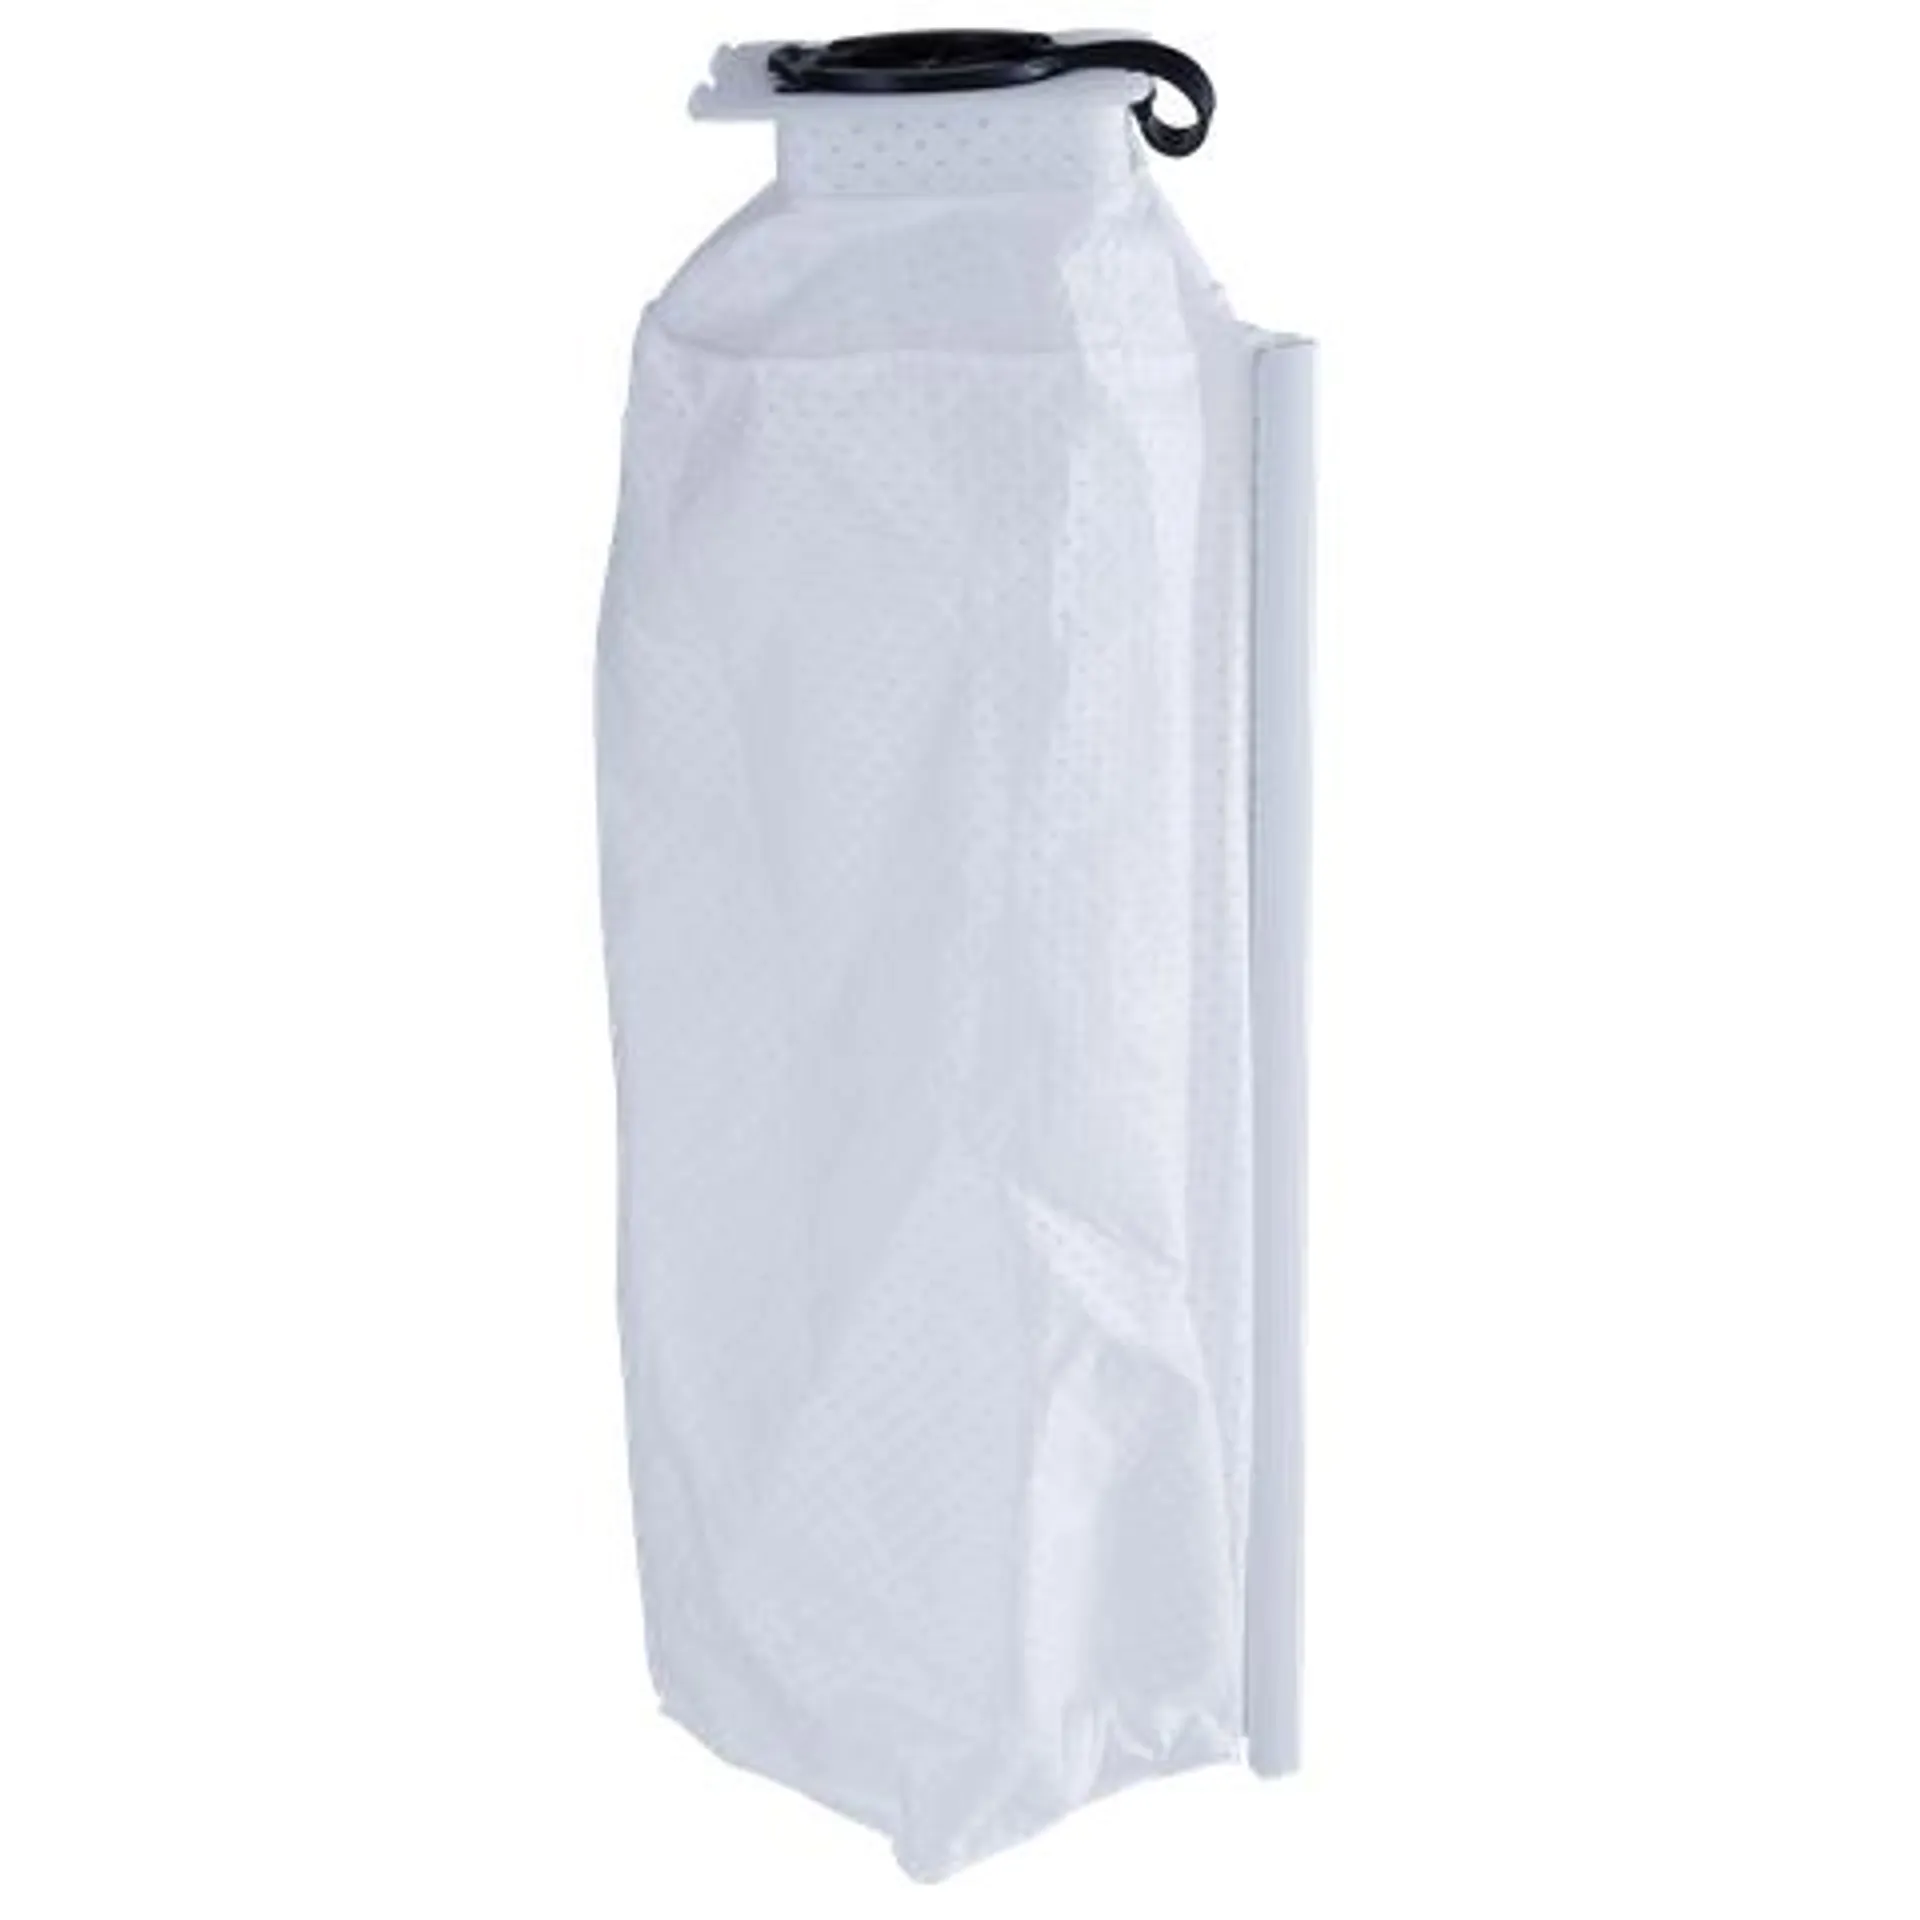 Makita Reusable Bag for Vacuum Cleaner